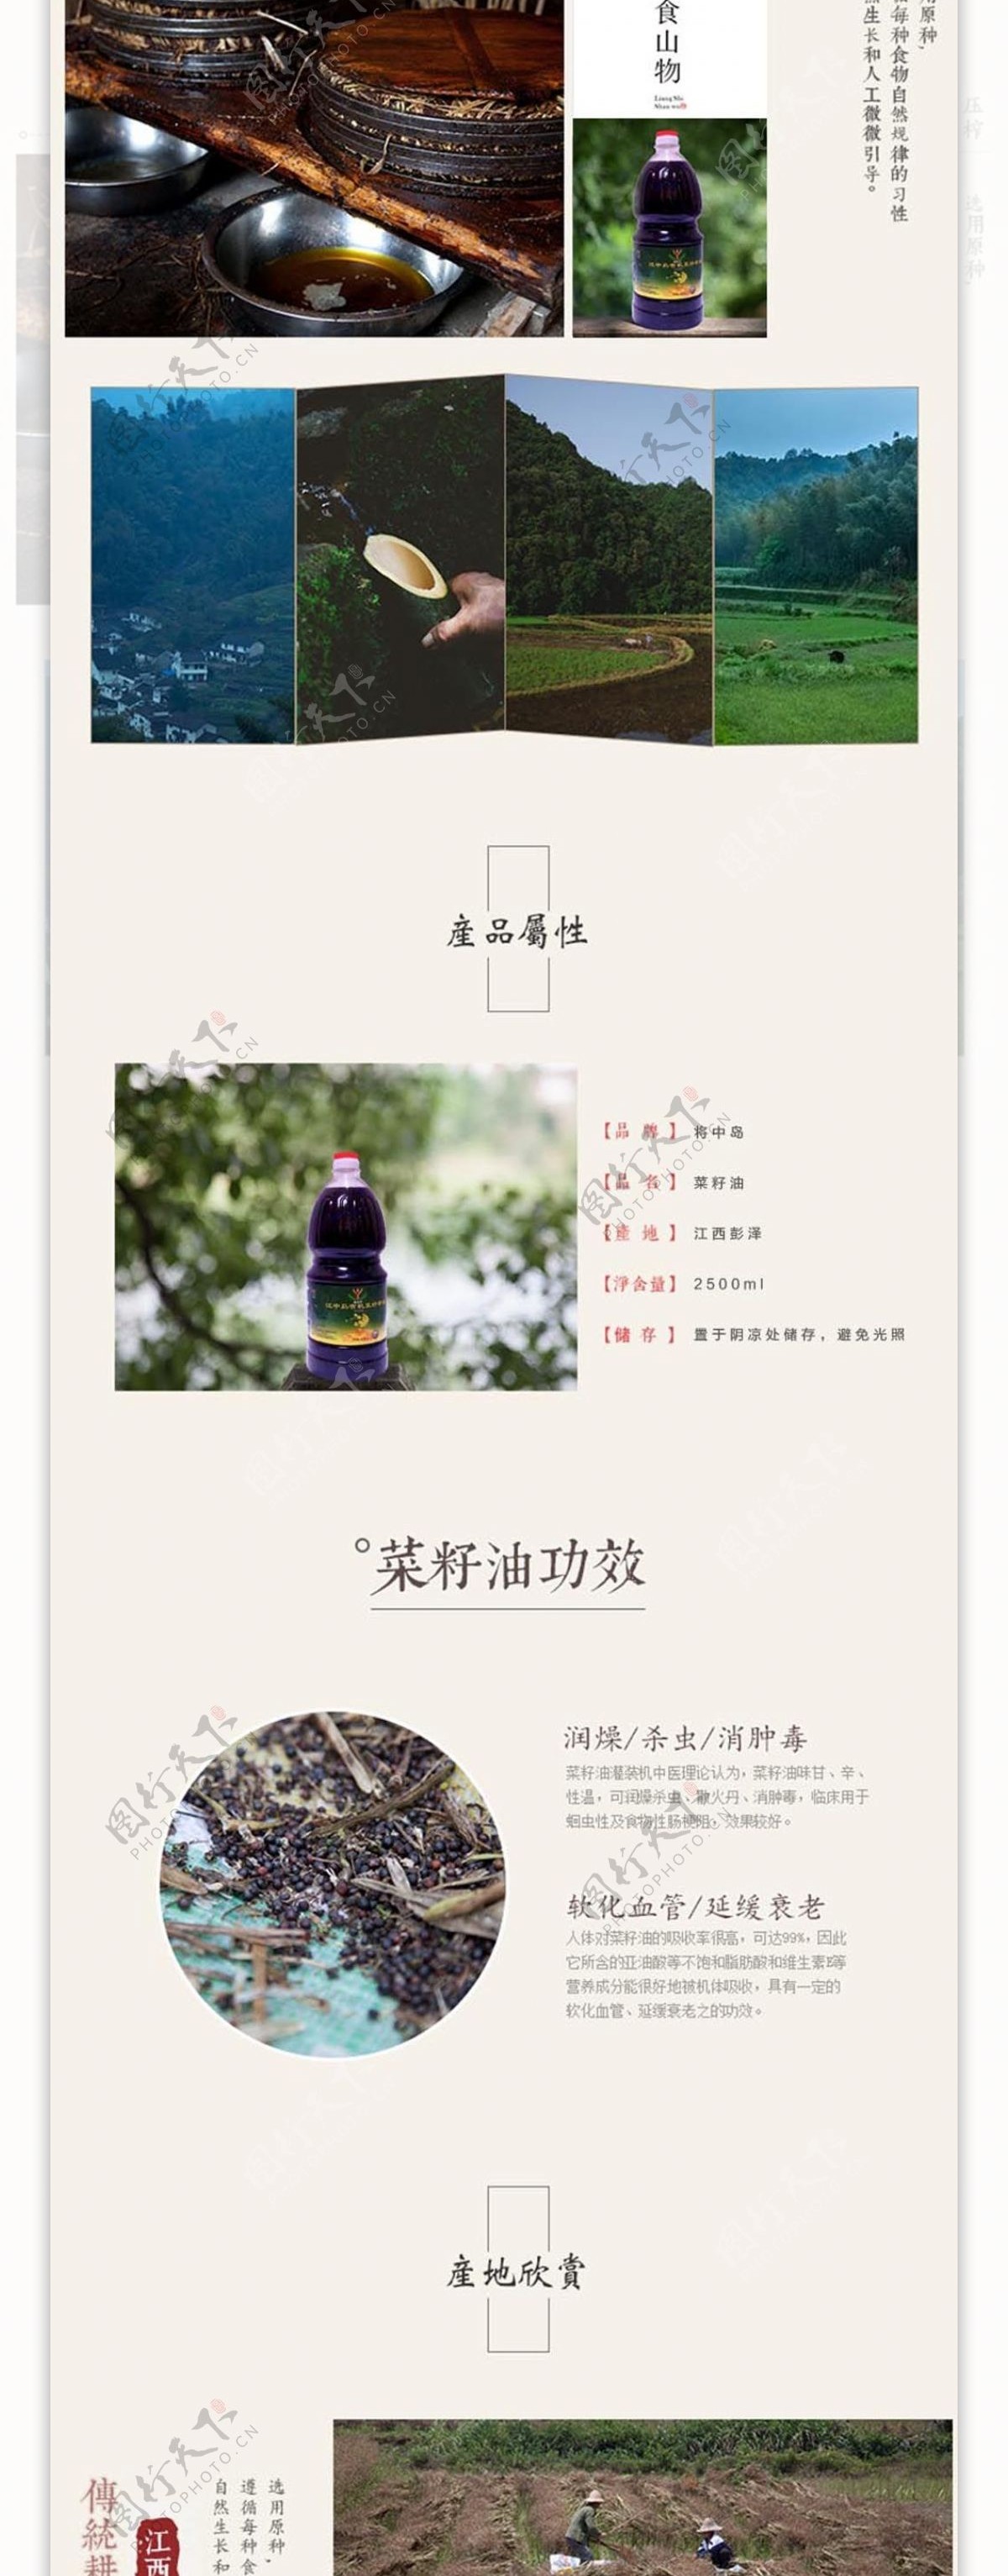 江西特产有机纯菜油详情页图片